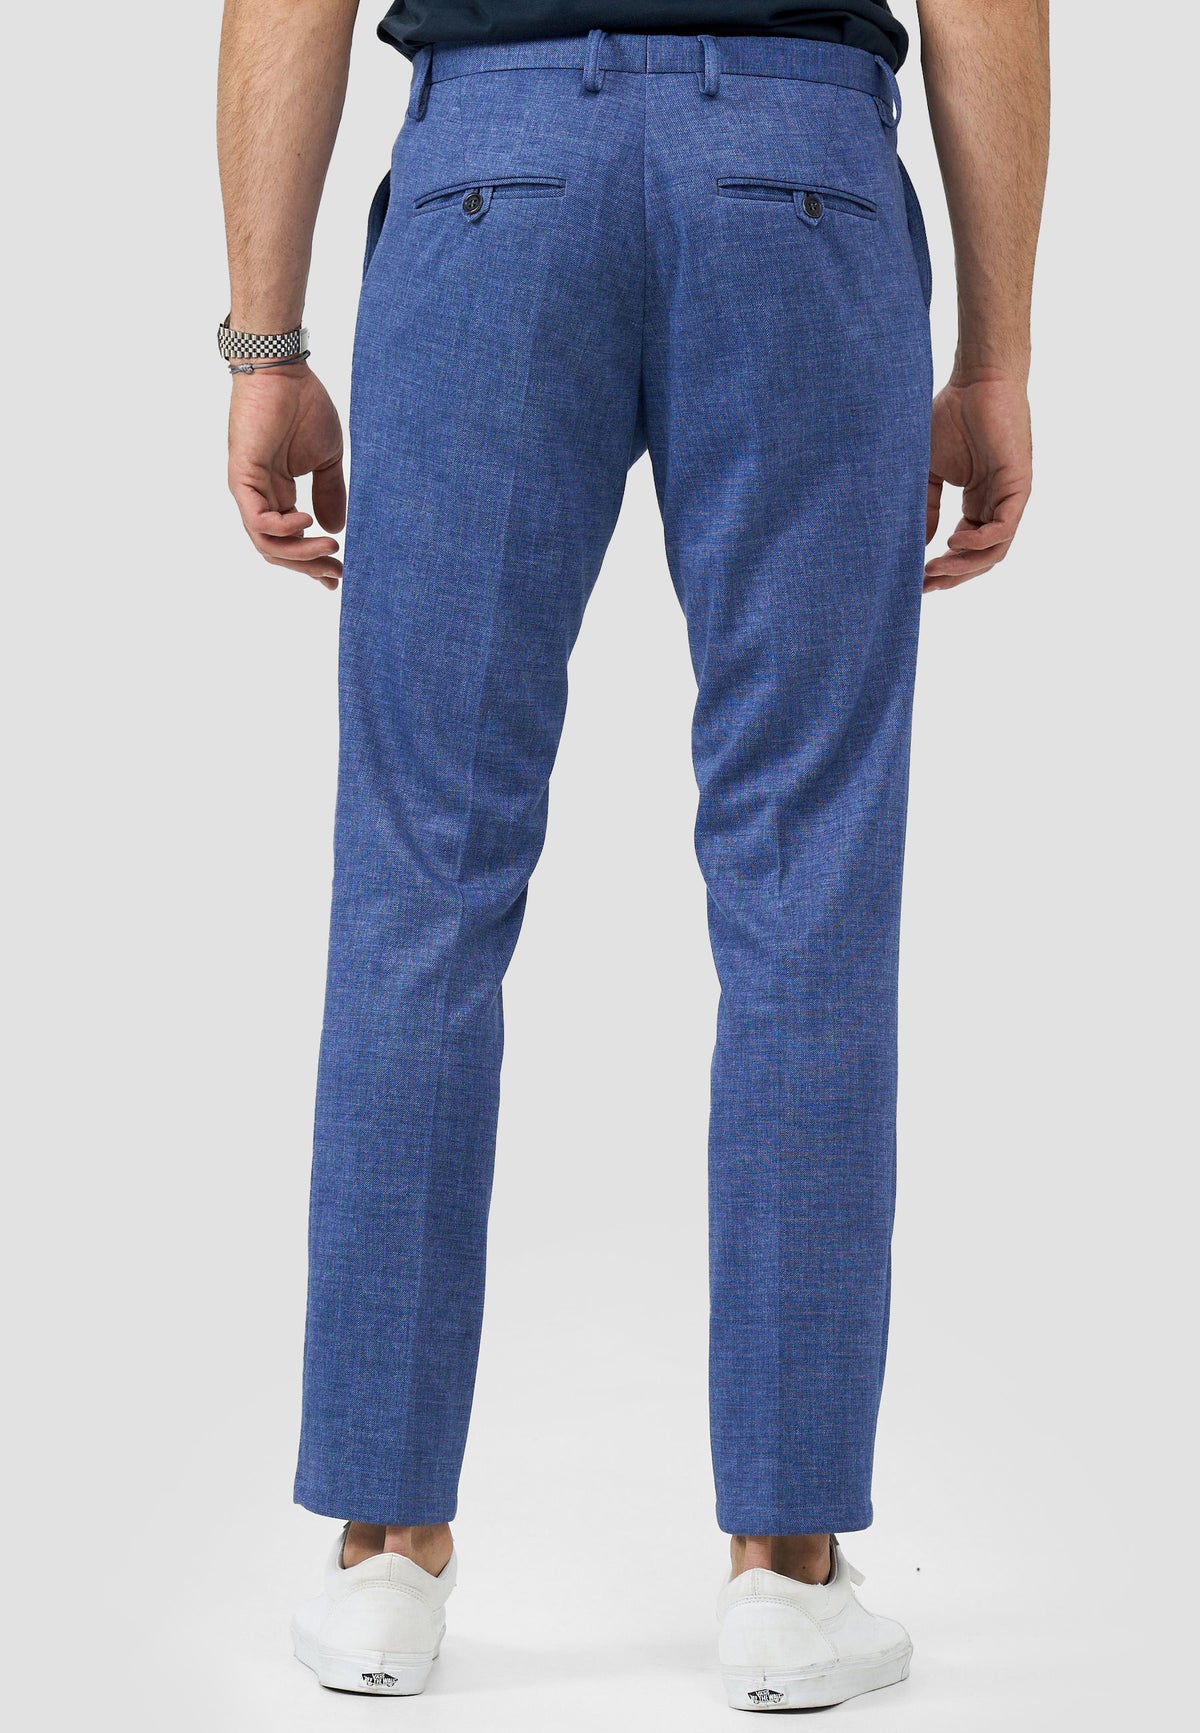 Jersey Suit Pants DiSailor 221605-650